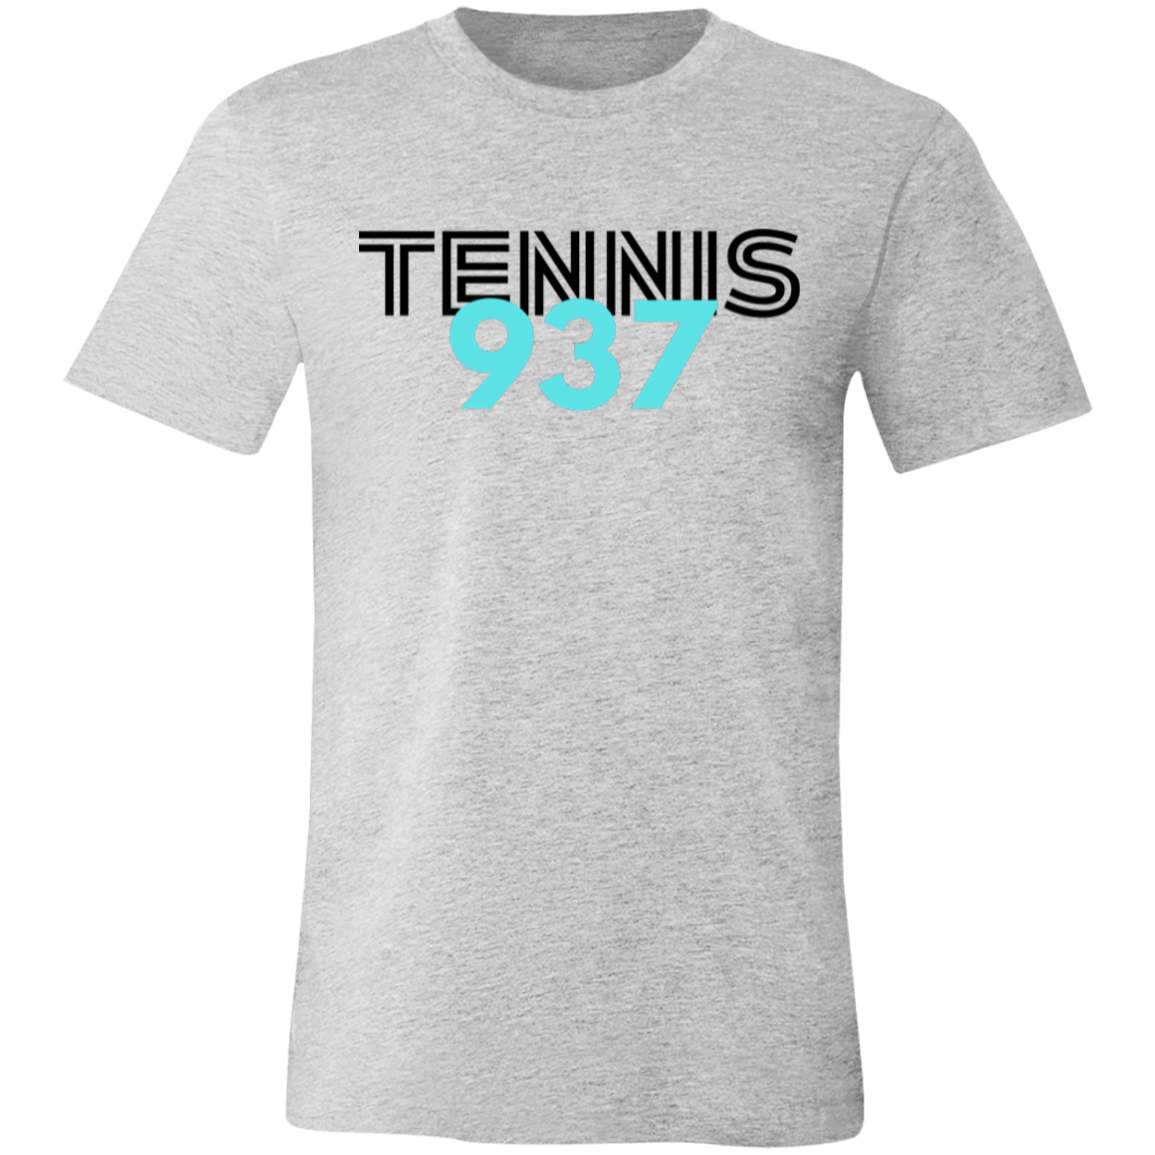 Tennis937 Unisex Jersey Tee